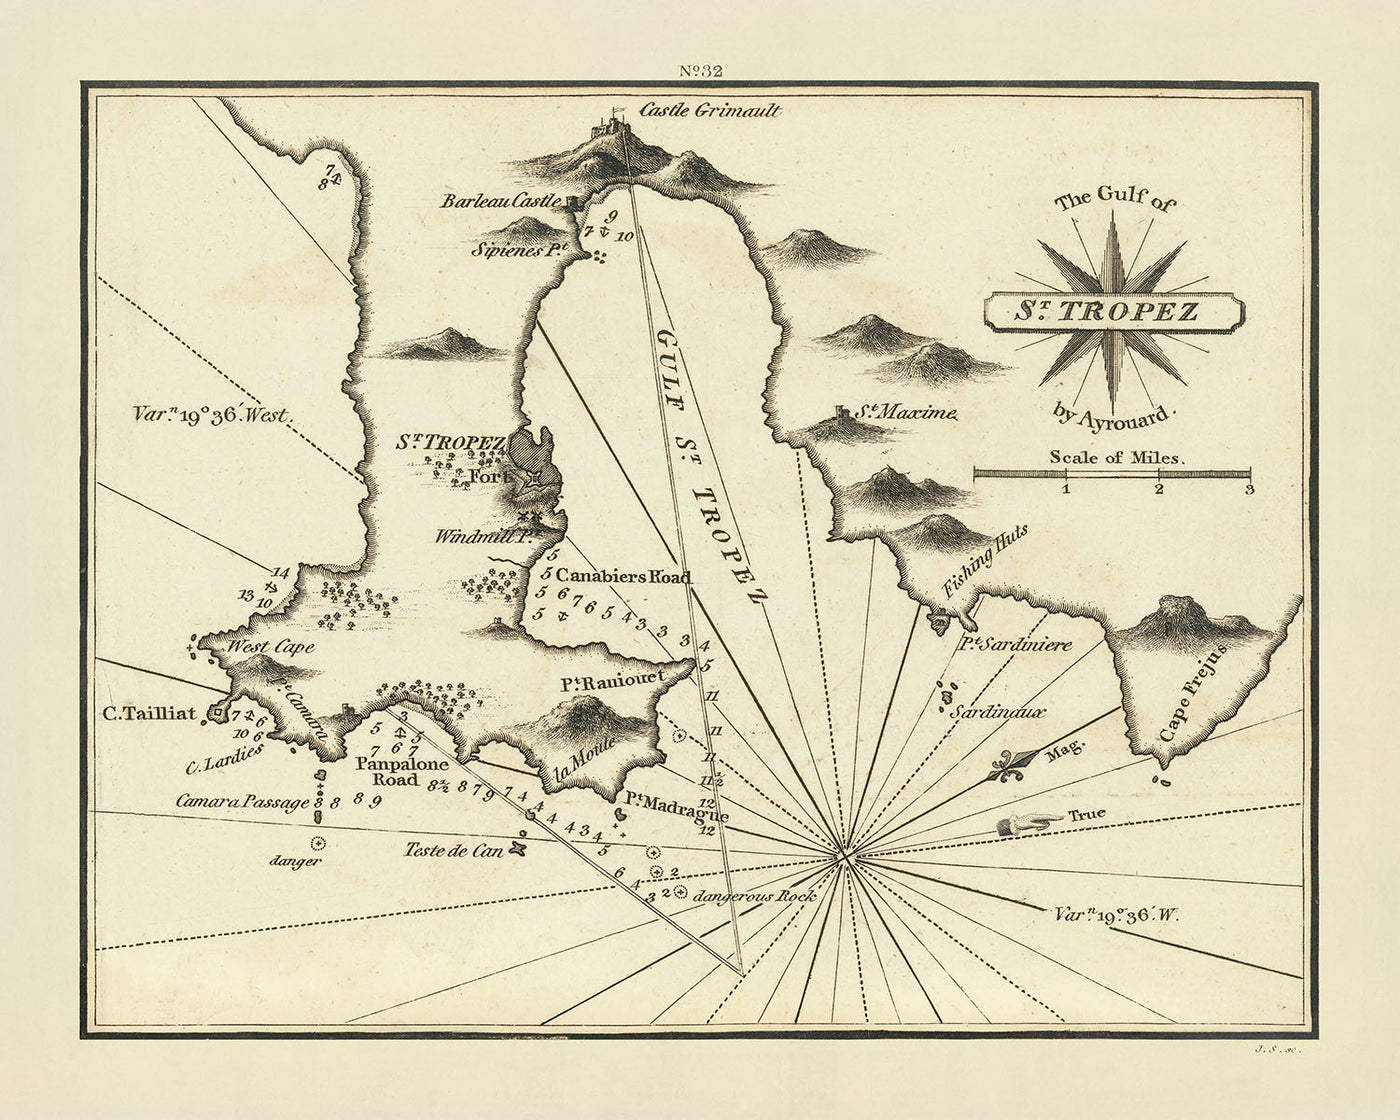 Alte Seekarte des Golfs von St. Tropez von Heather, 1802: Fischerhütten, Festungen, Navigationshilfen